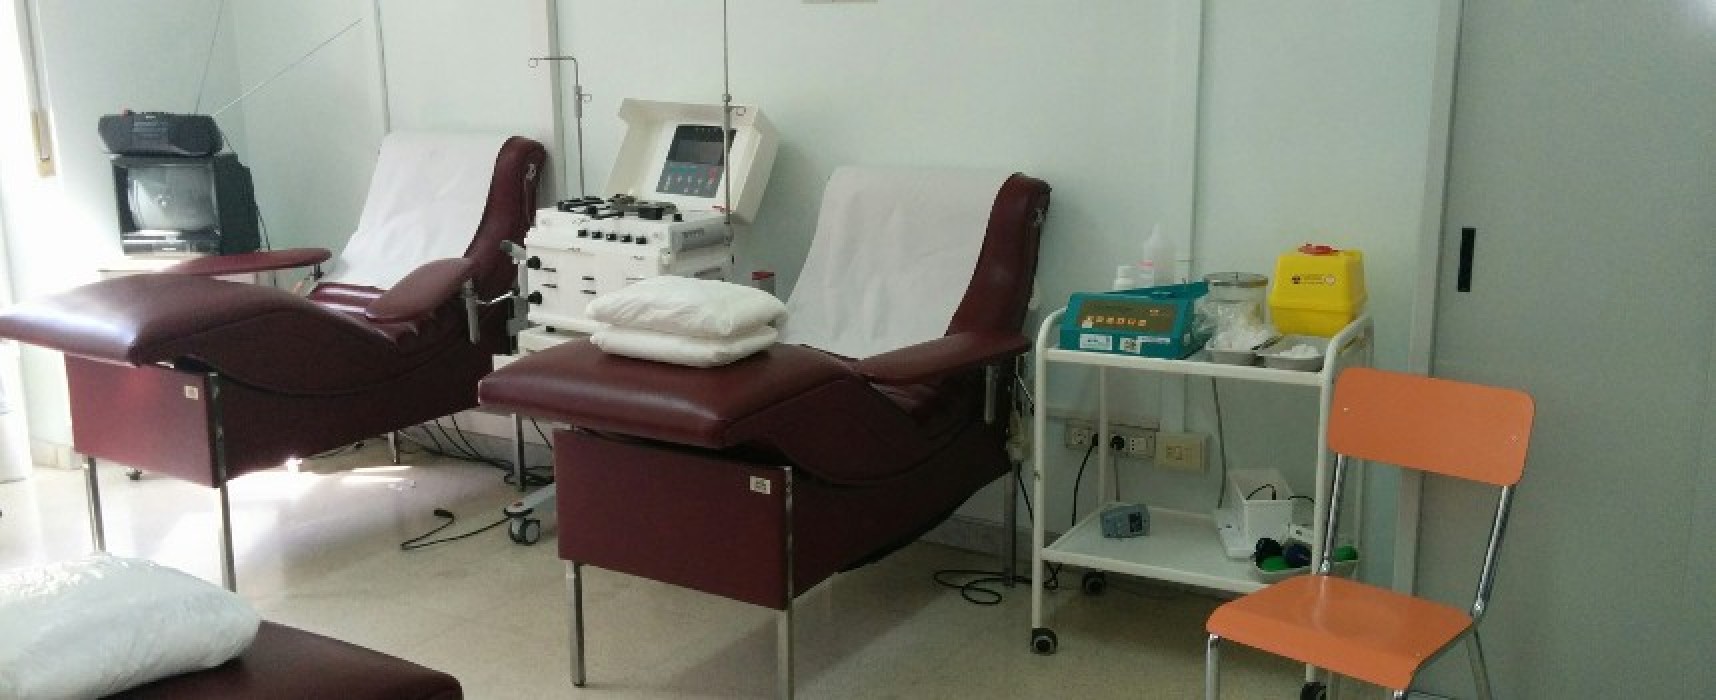 Avis Bisceglie, domani donazione sangue al Centro Raccolta in Ospedale